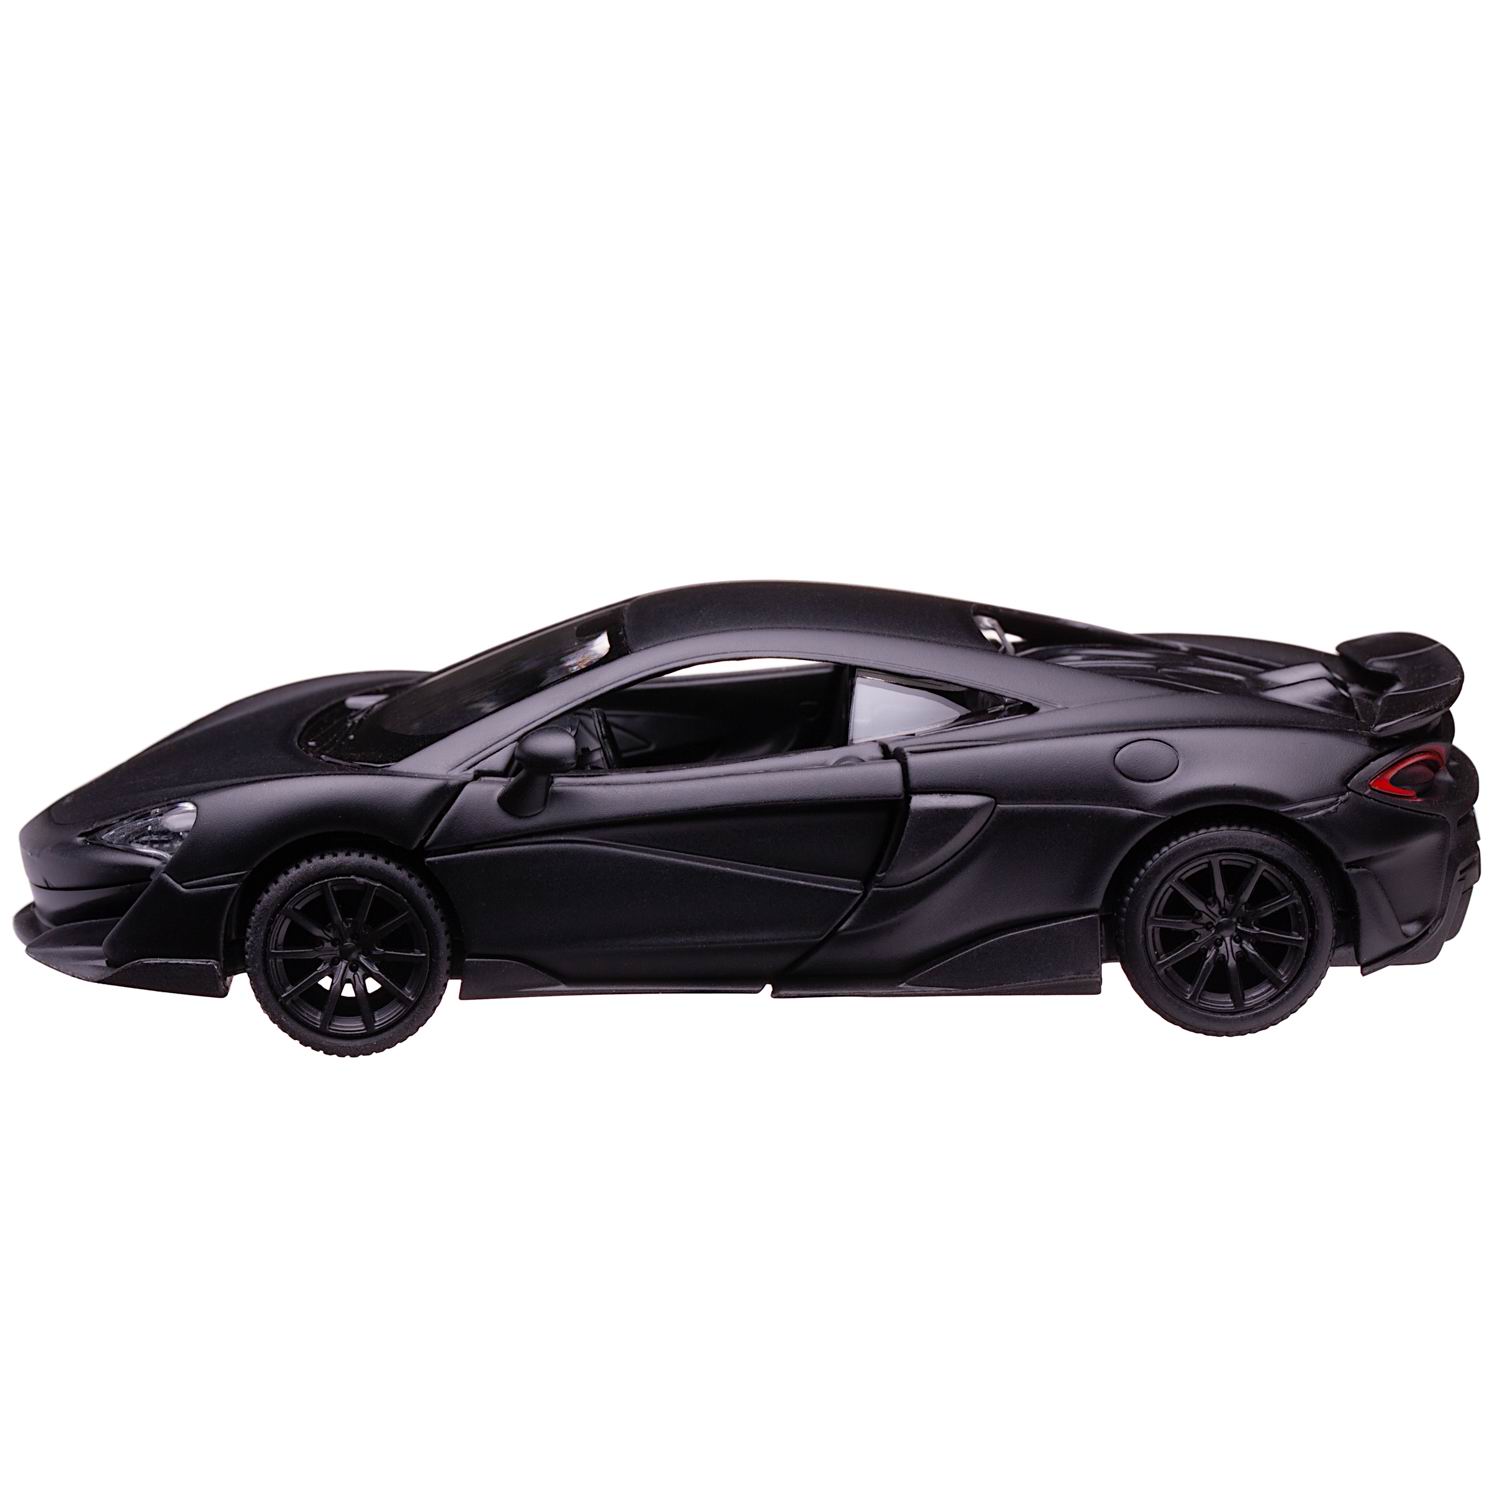 Машина металлическая Uni-Fortune McLaren 600LT черный матовый цвет двери открываются 554985M - фото 4